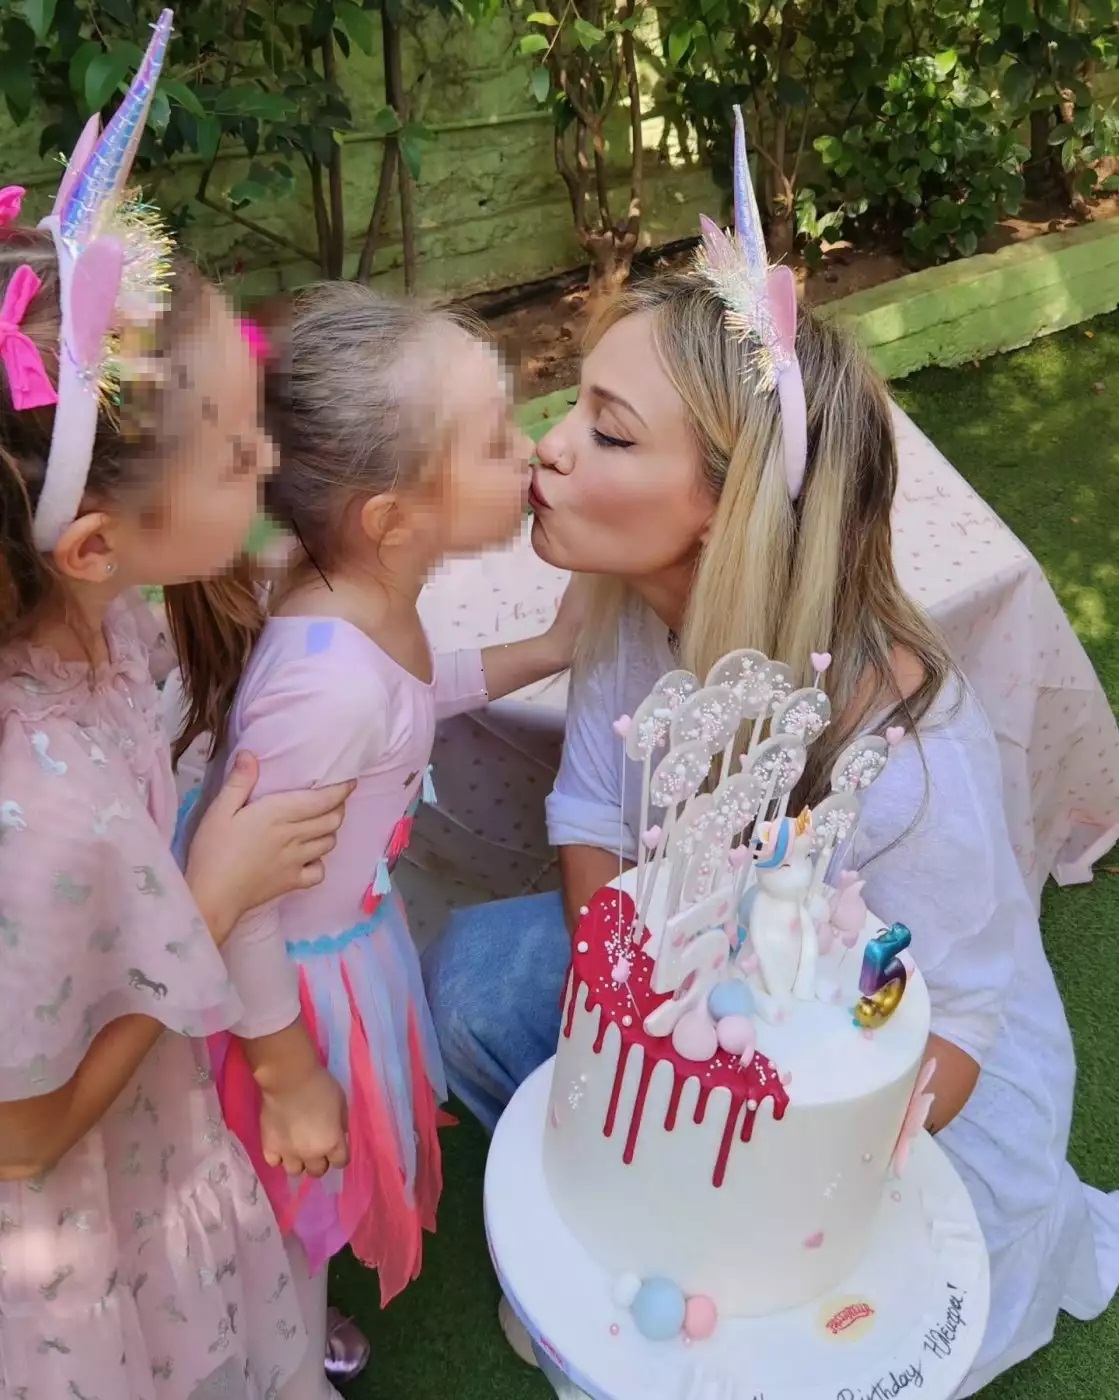 Πηνελόπη Αναστασοπούλου: Γιόρτασε τα 5α γενέθλια της κόρης της με ένα εντυπωσιακό πάρτι (εικόνες)